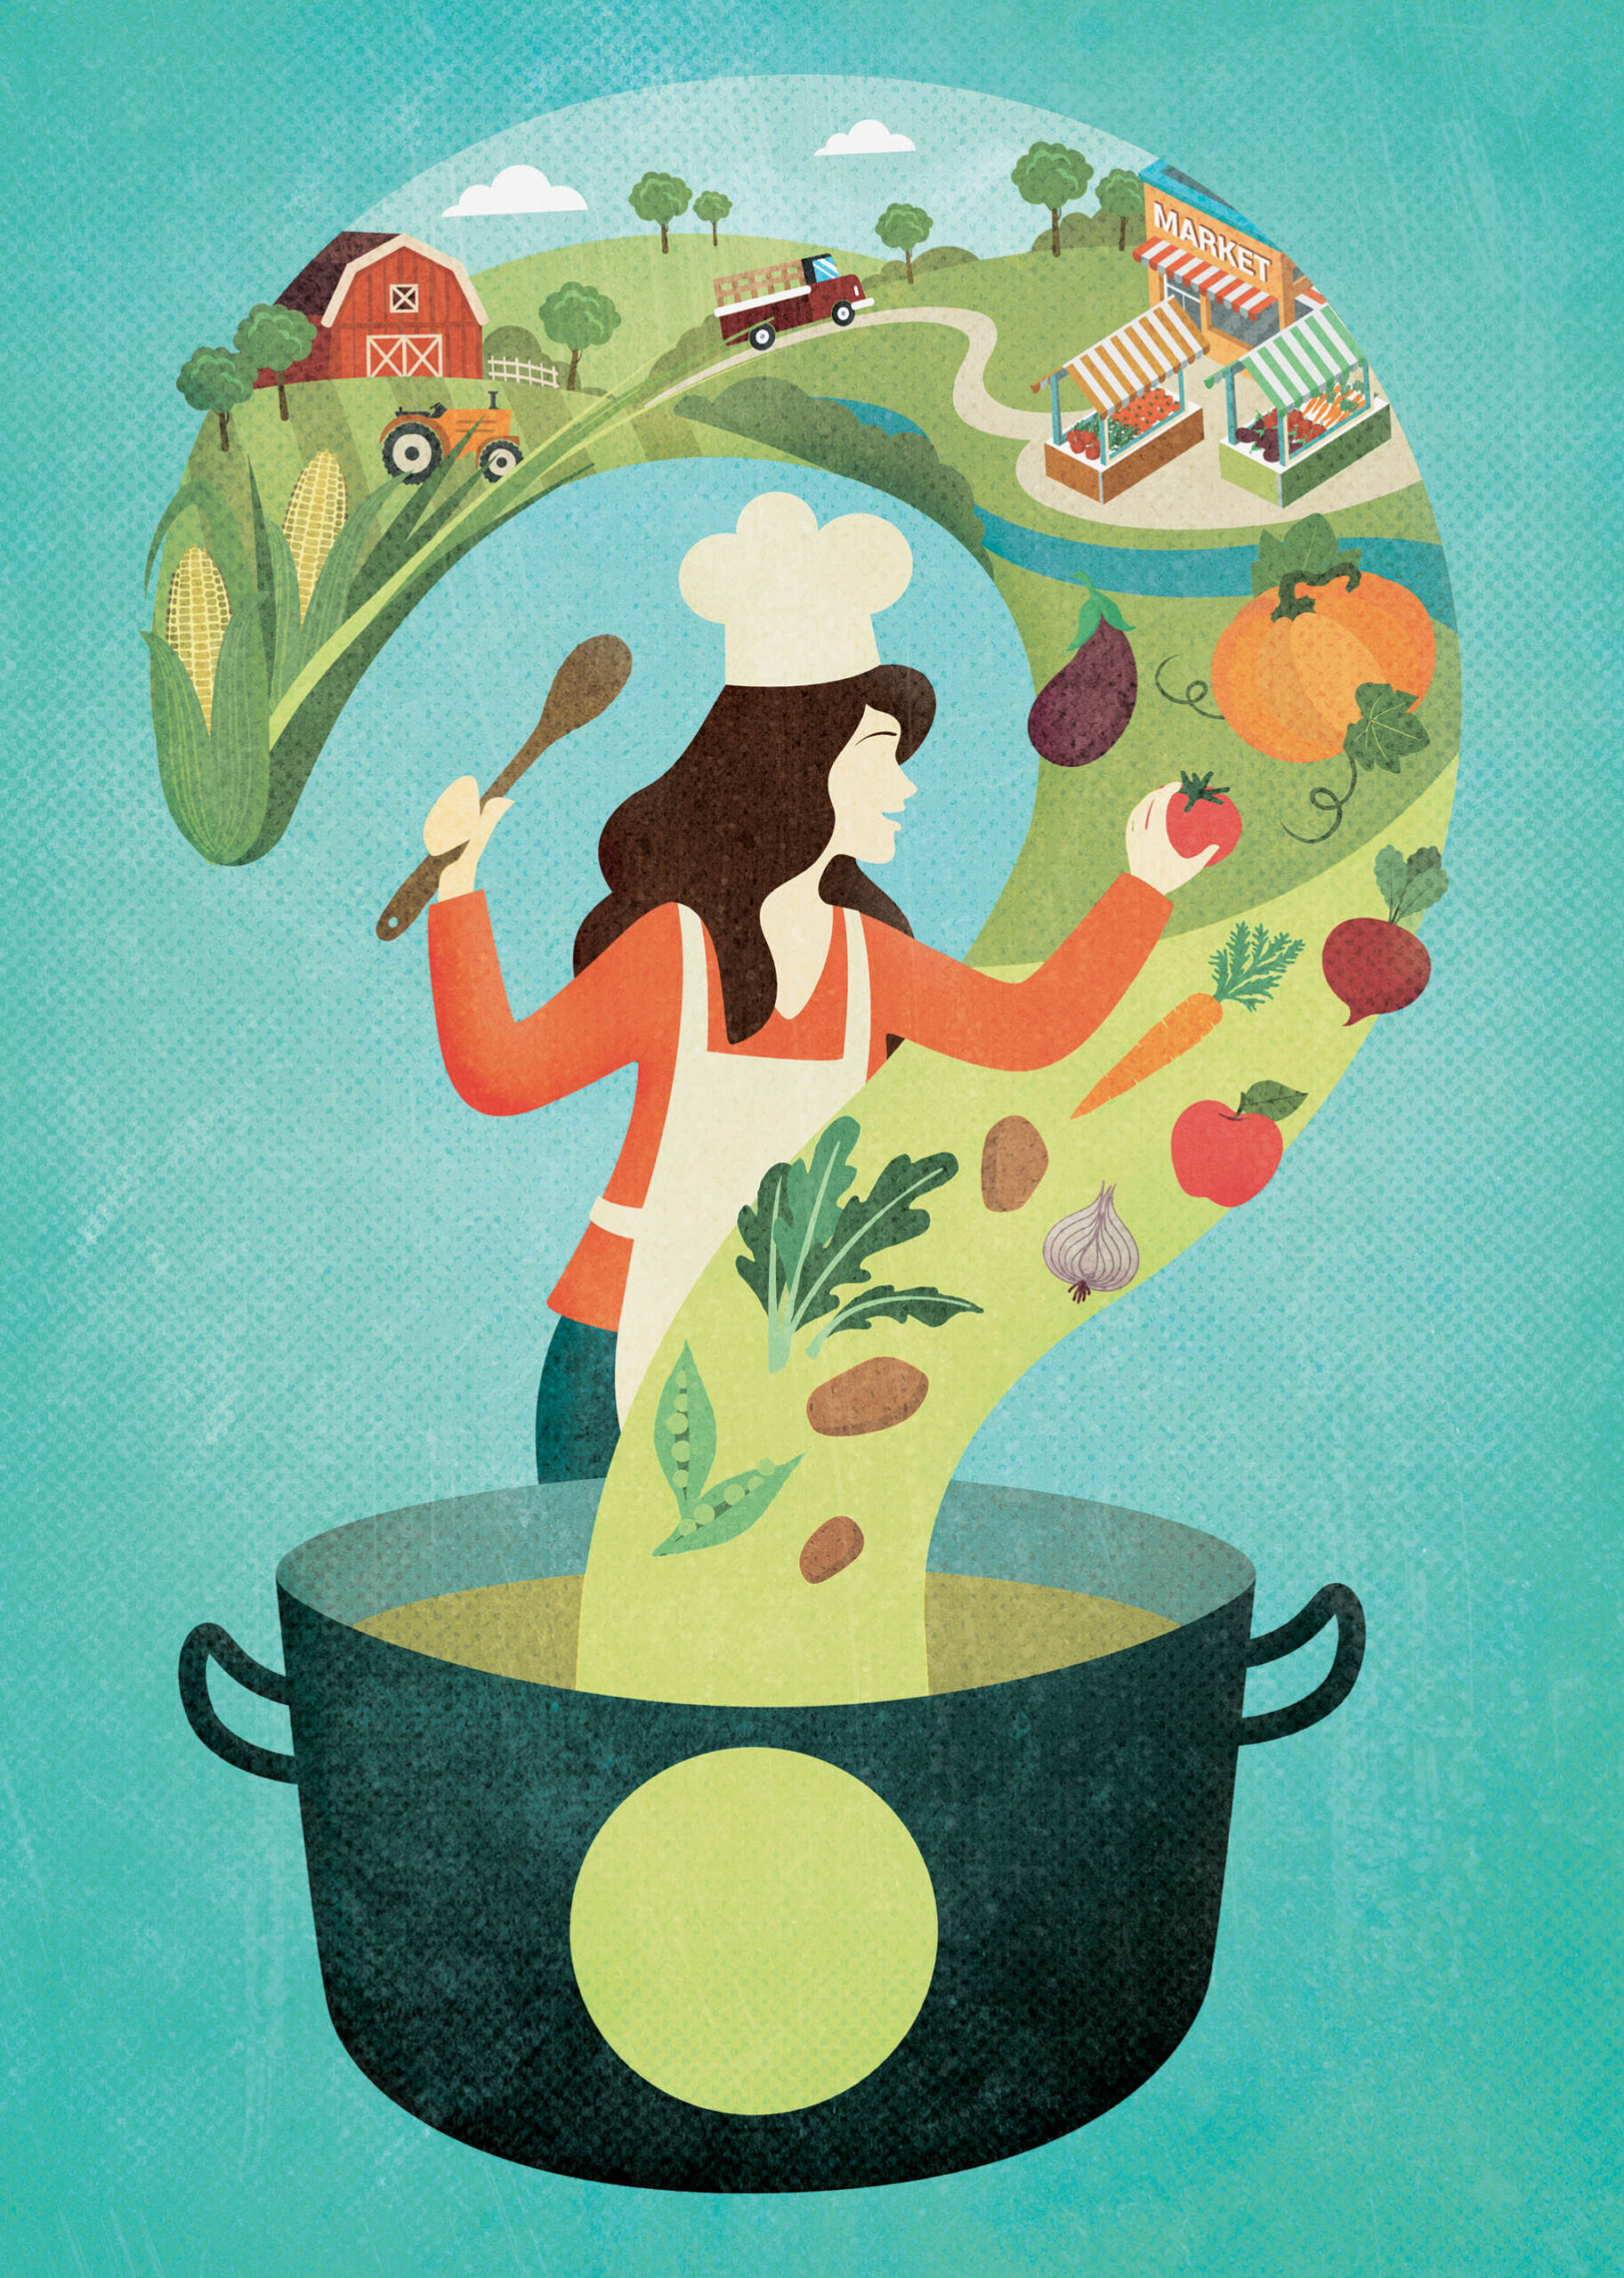 EAThink 2015 Cuciniamo insieme - Eleonora Casetta